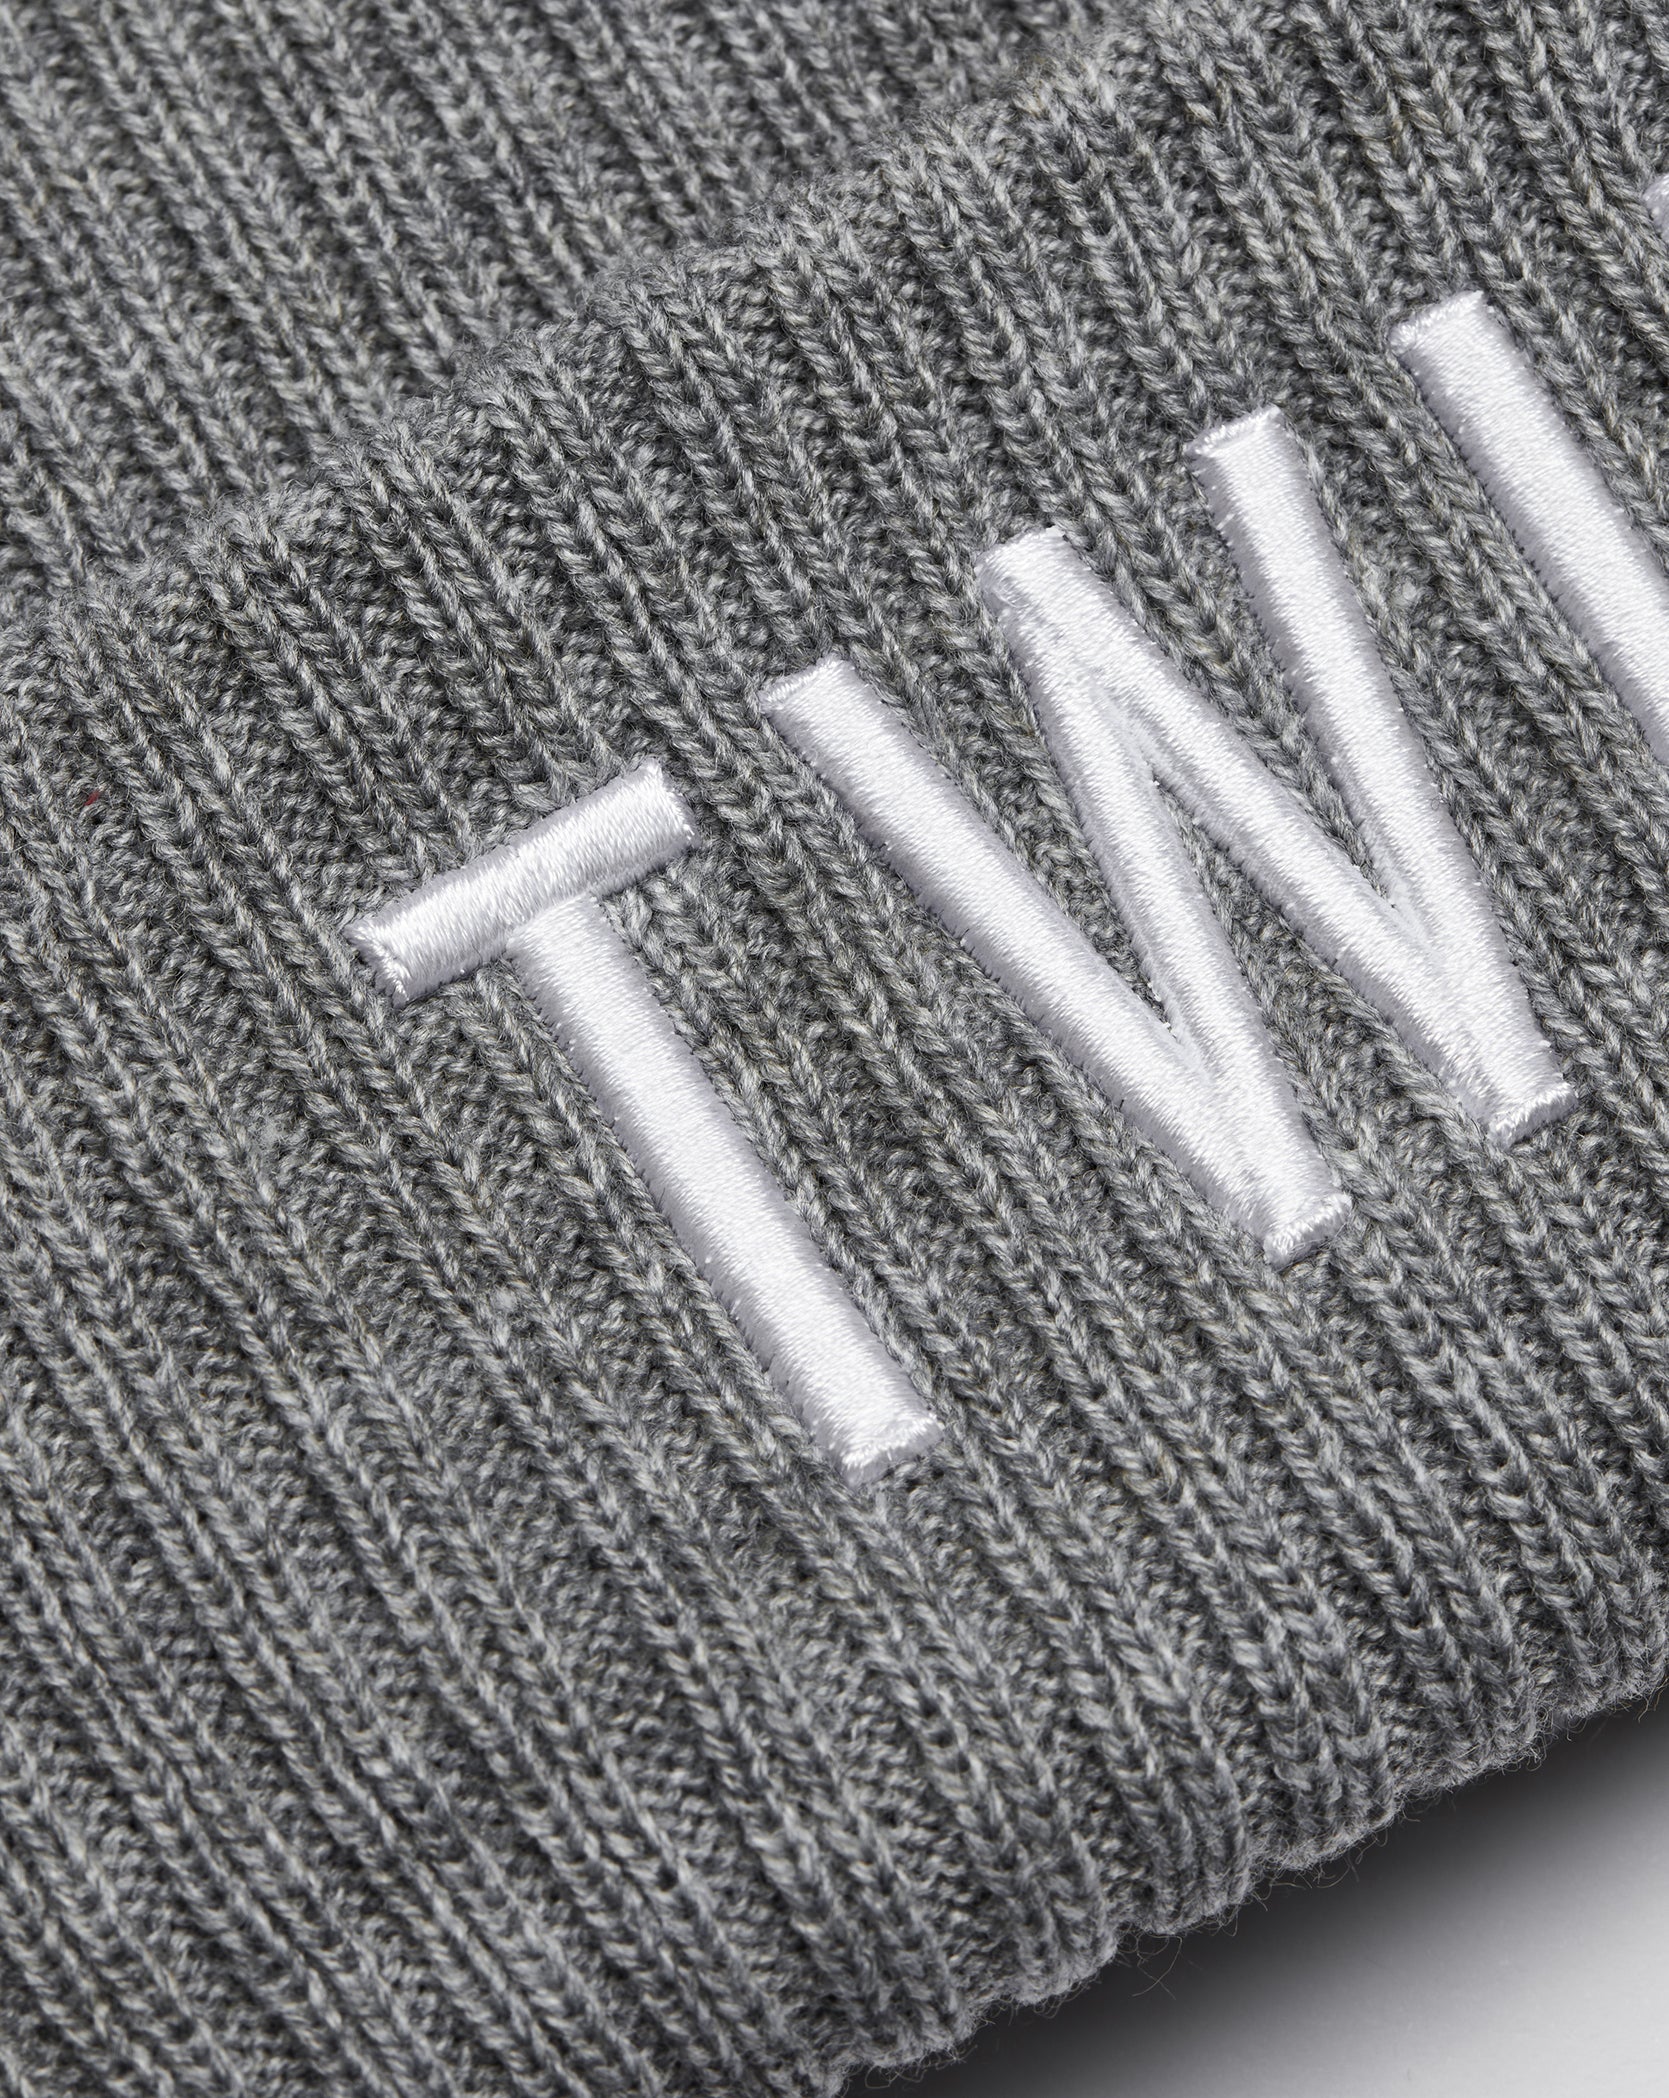 Twinzz logo grey knit beanie